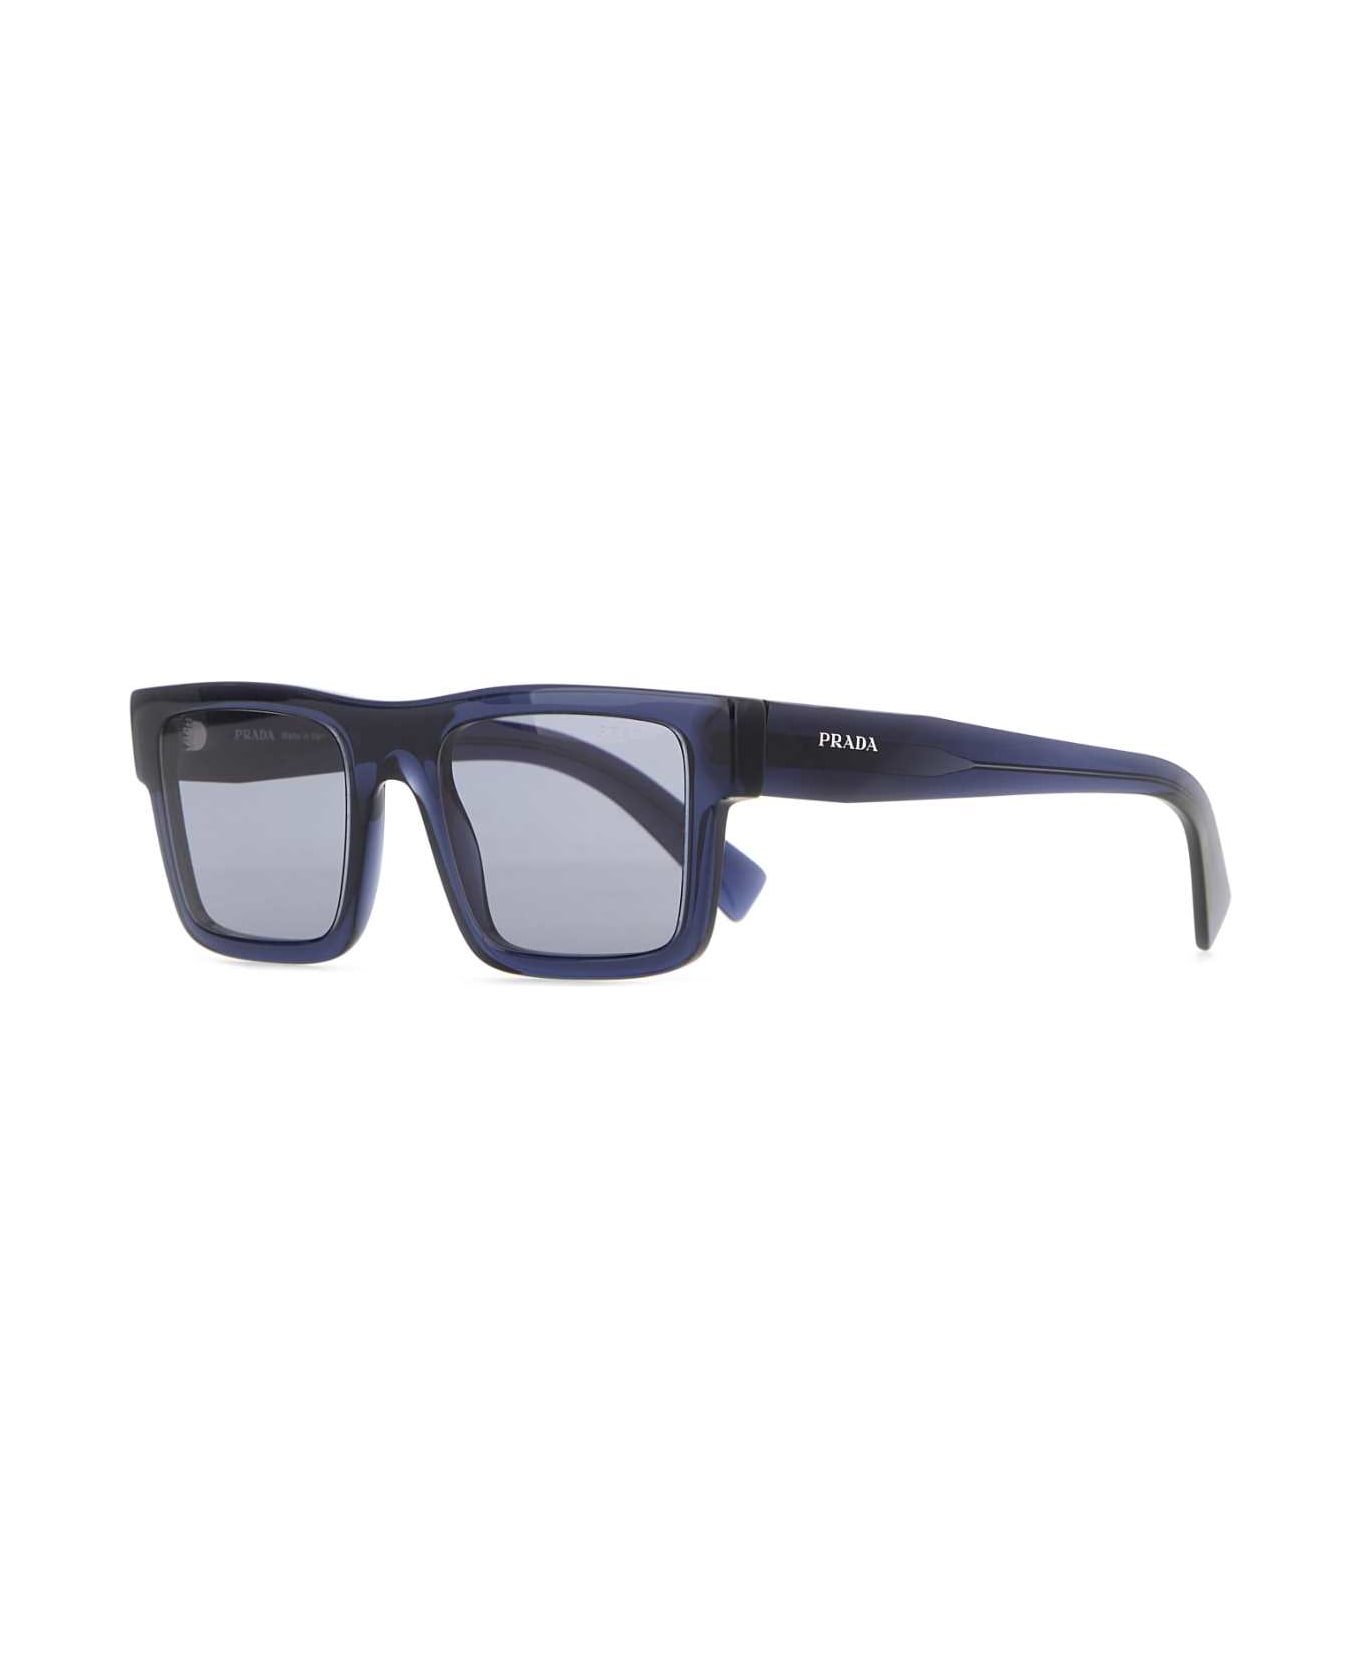 Prada Dark Blue Acetate Sunglasses - LENSESBLUETTE